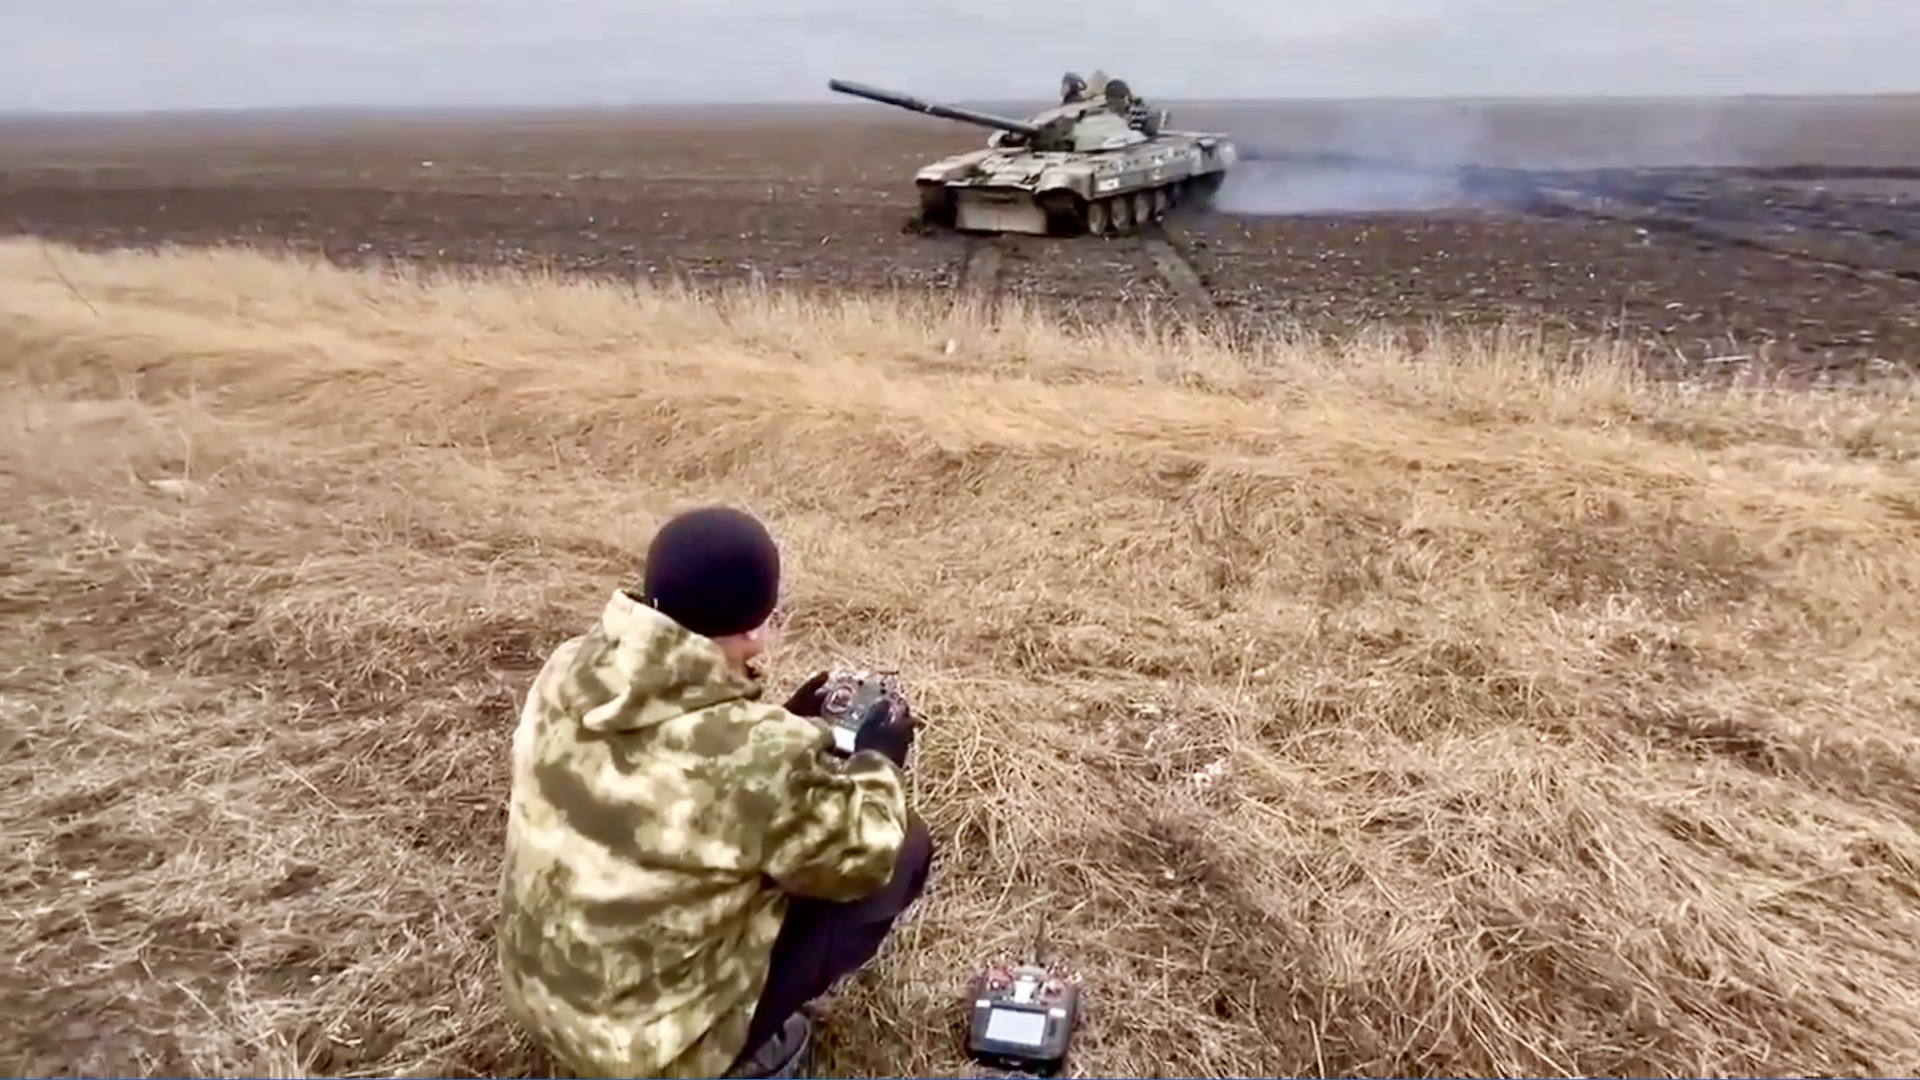 A Russian operative controls a captured Ukrainian tank via remote controls.